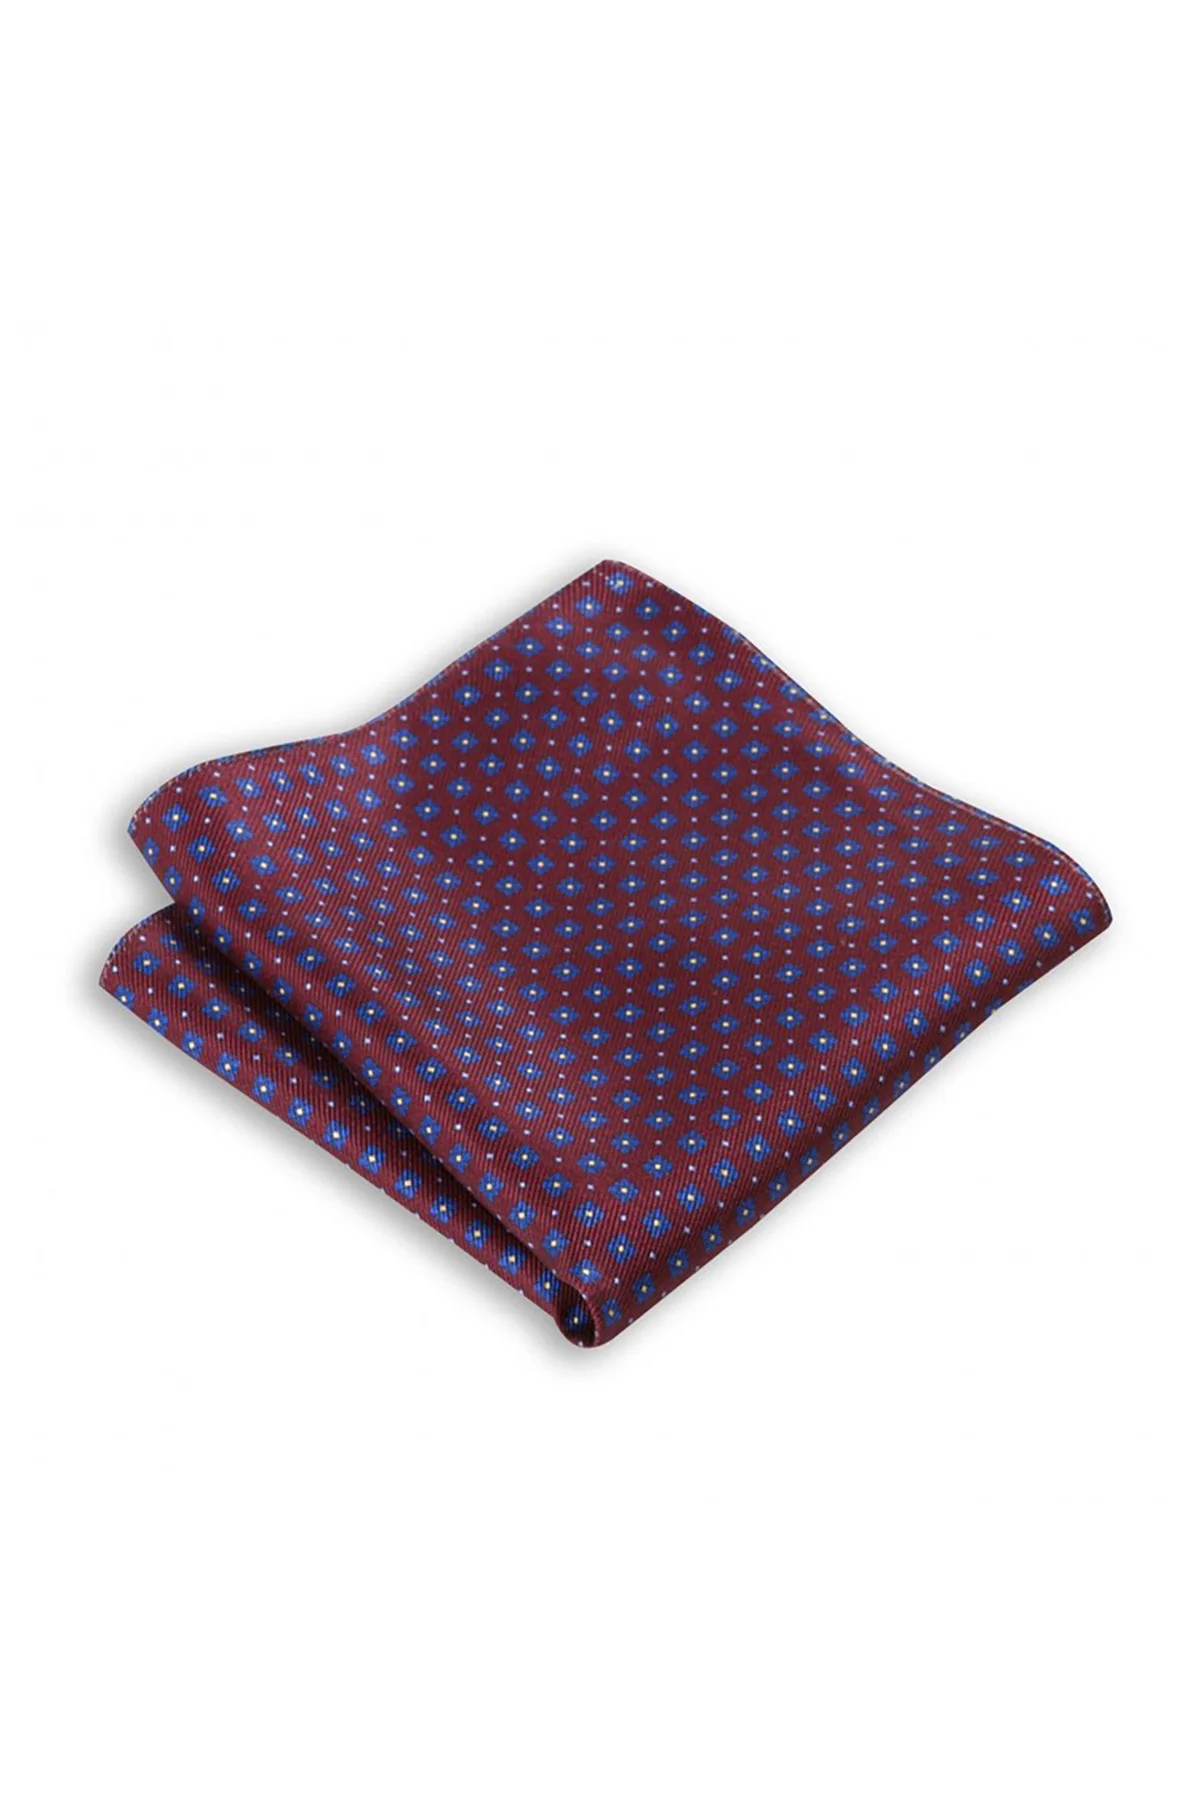 Мужской Шелковый Карманный платок, Сделано в Италии, 33x33 см, отличный наряд для классических костюмов, хорошее сочетание с куртками от AliExpress RU&CIS NEW